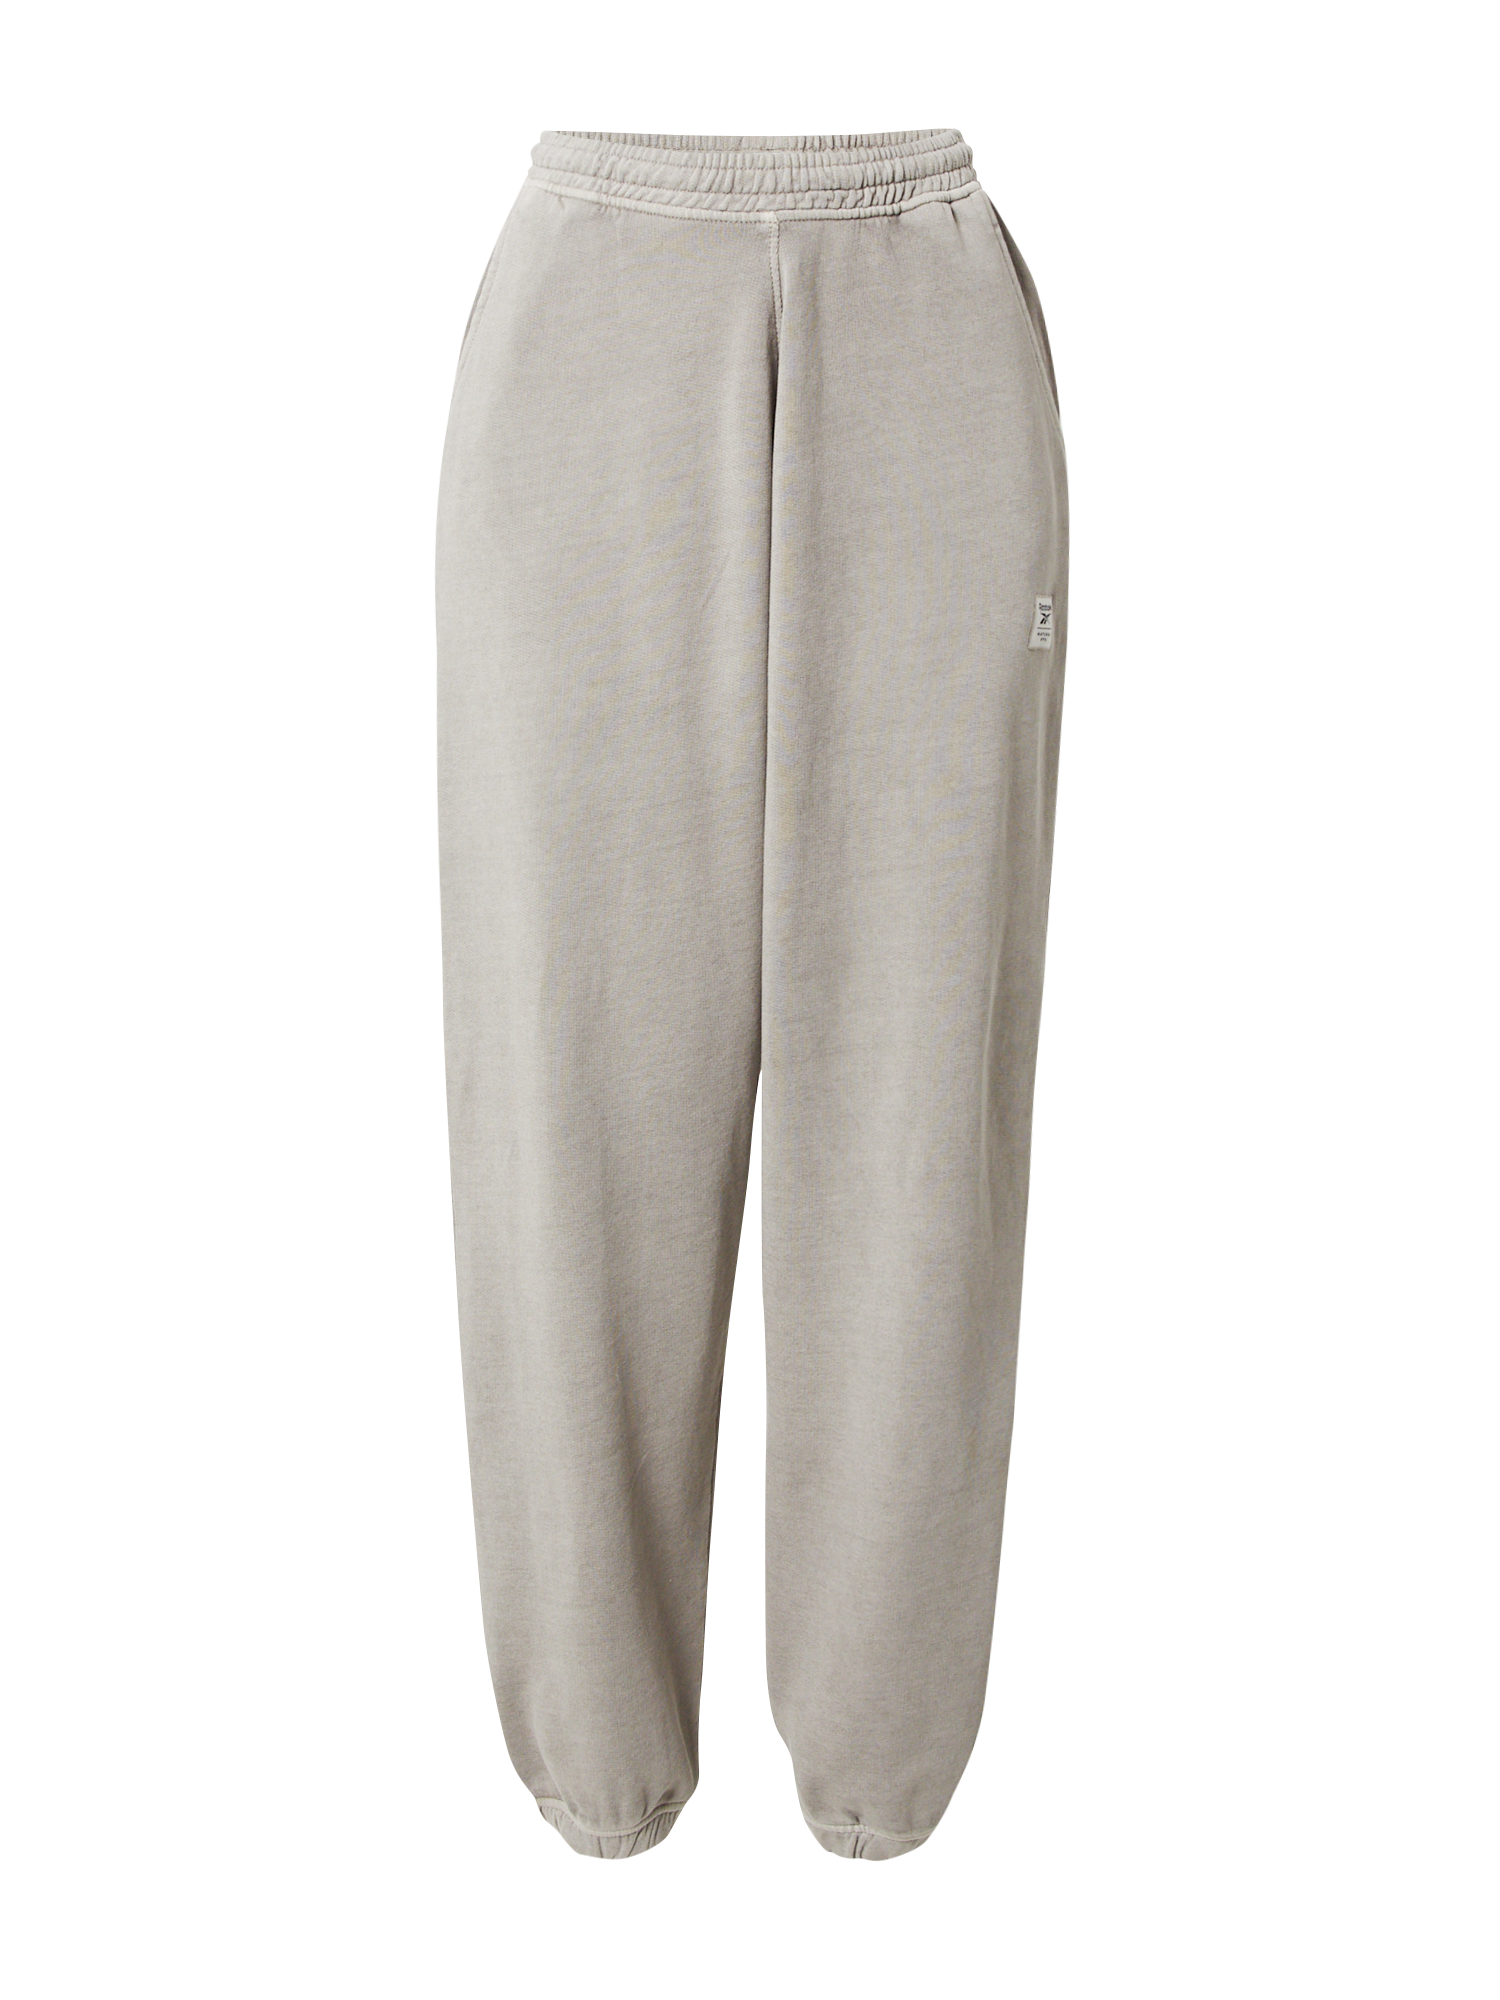 lesrV Odzież Reebok Classics Spodnie w kolorze Szaro-Beżowym 